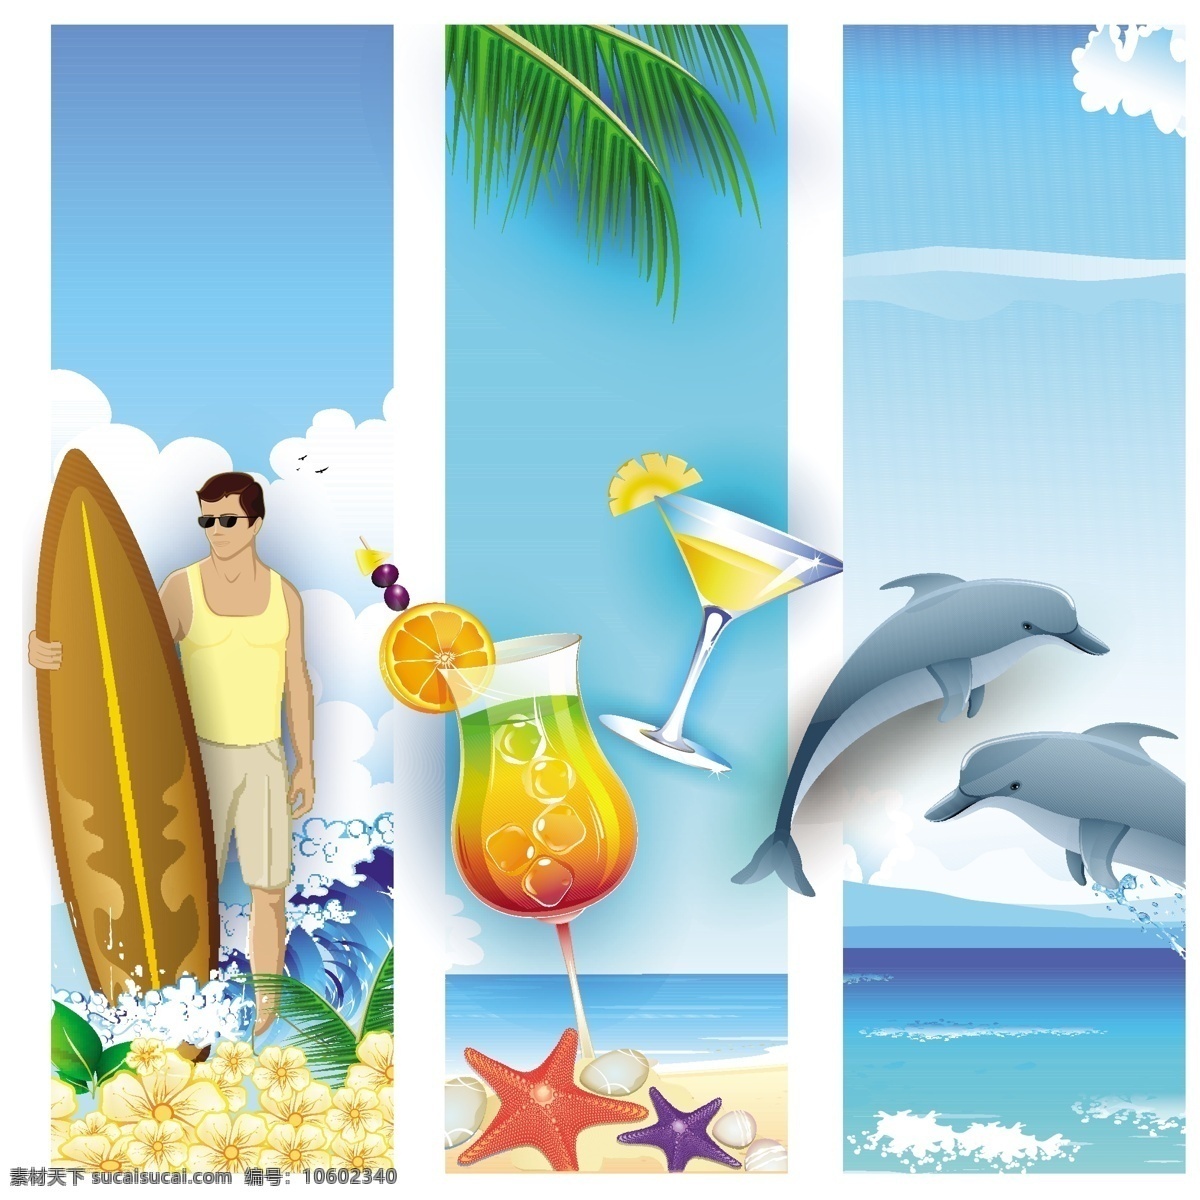 假日旅行矢量 假日旅行 横幅模板 banner 横幅设计 船 游泳圈 太阳伞 白色